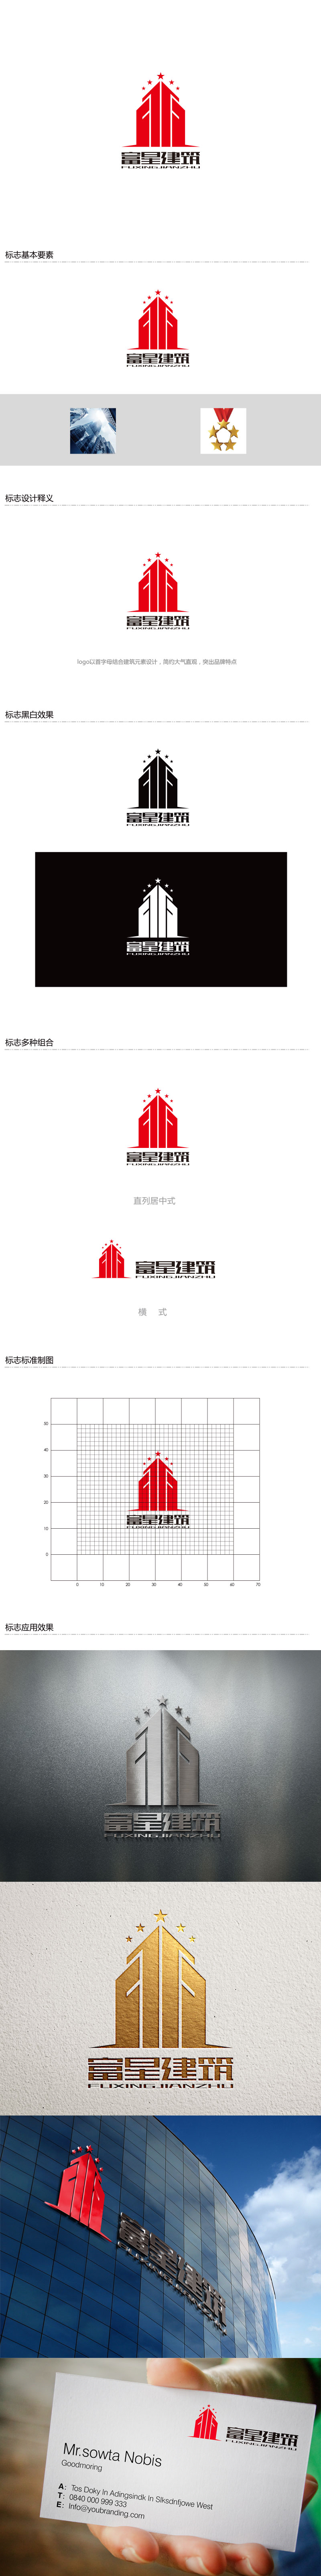 孙金泽的天津富星建筑工程有限公司logo设计